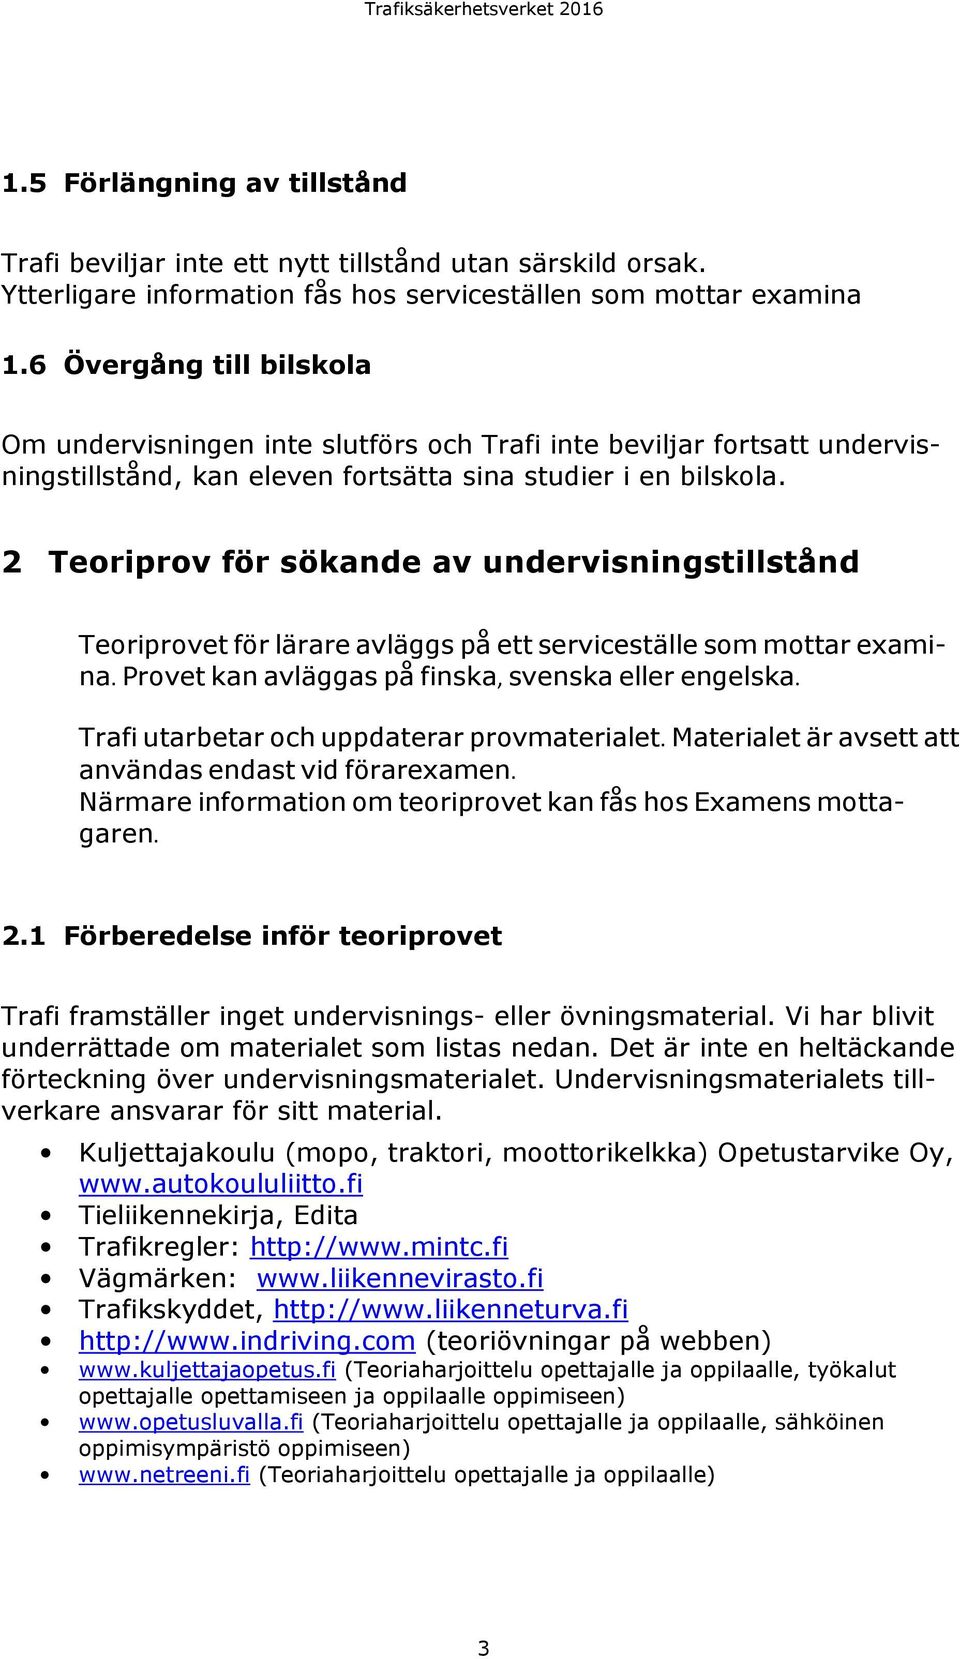 2 Teoriprov för sökande av undervisningstillstånd Teoriprovet för lärare avläggs på ett serviceställe som mottar examina. Provet kan avläggas på finska, svenska eller engelska.